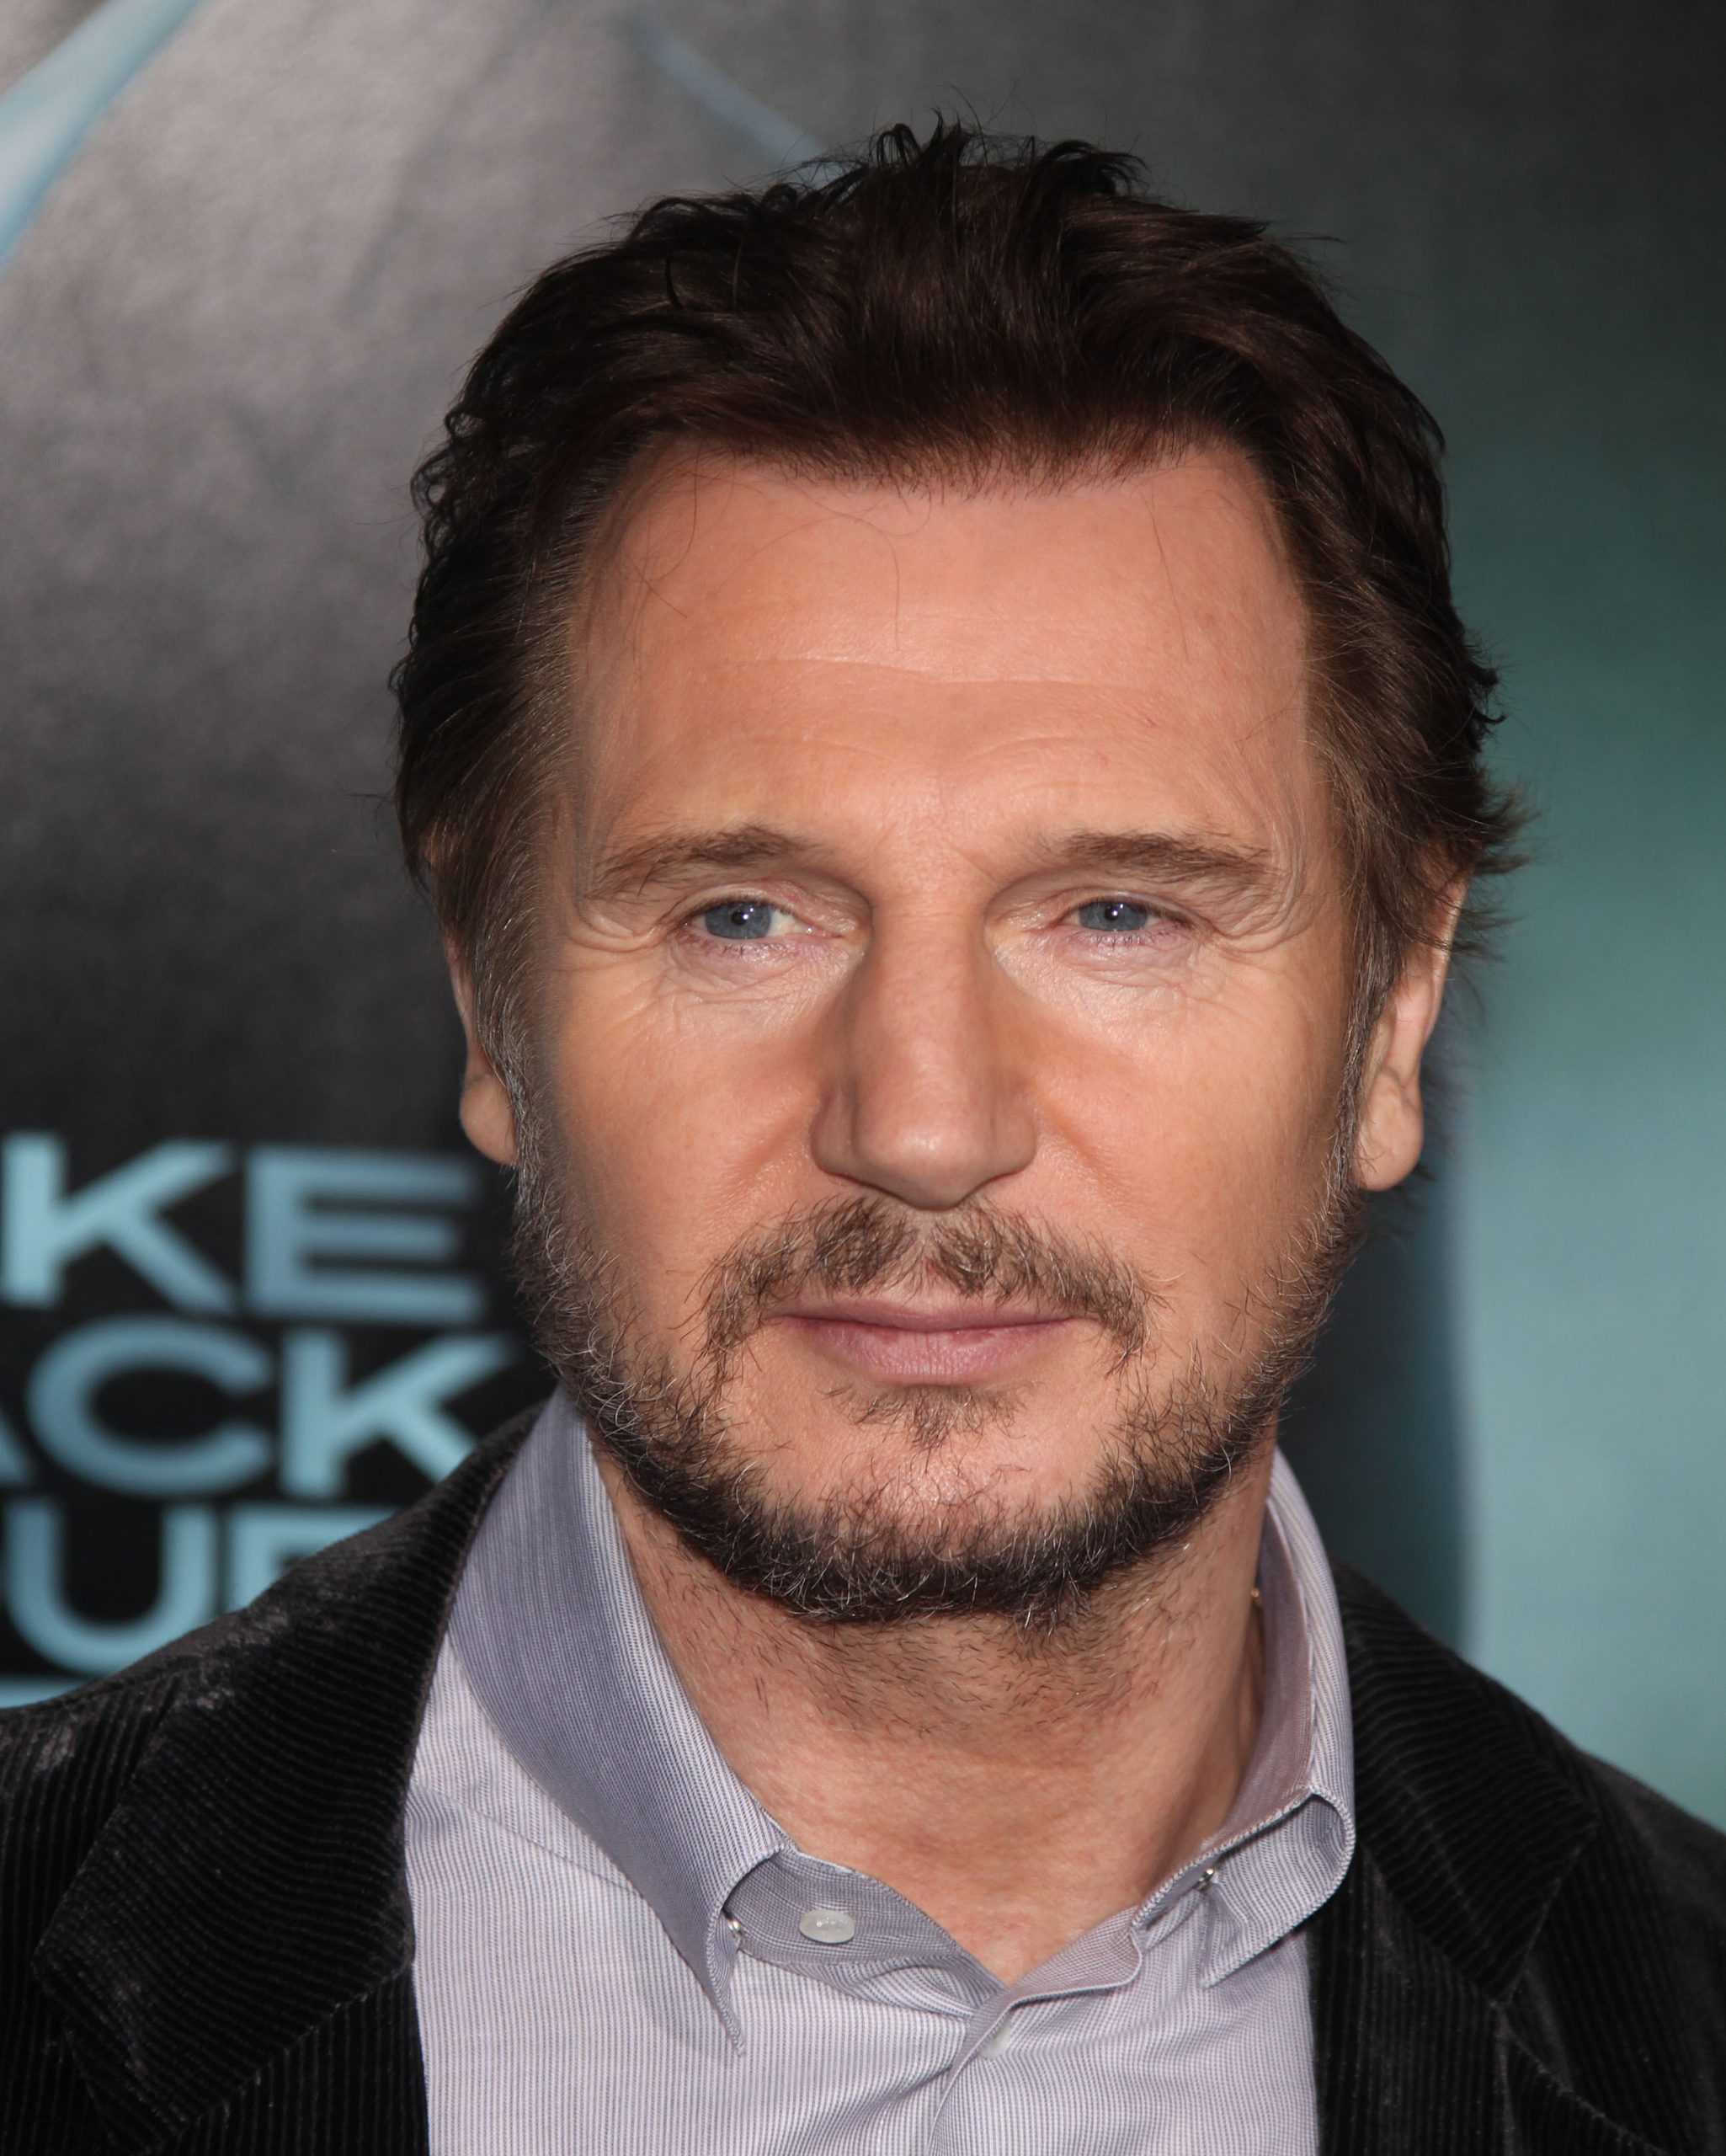 Liam Neeson pondera converter-se ao Islão